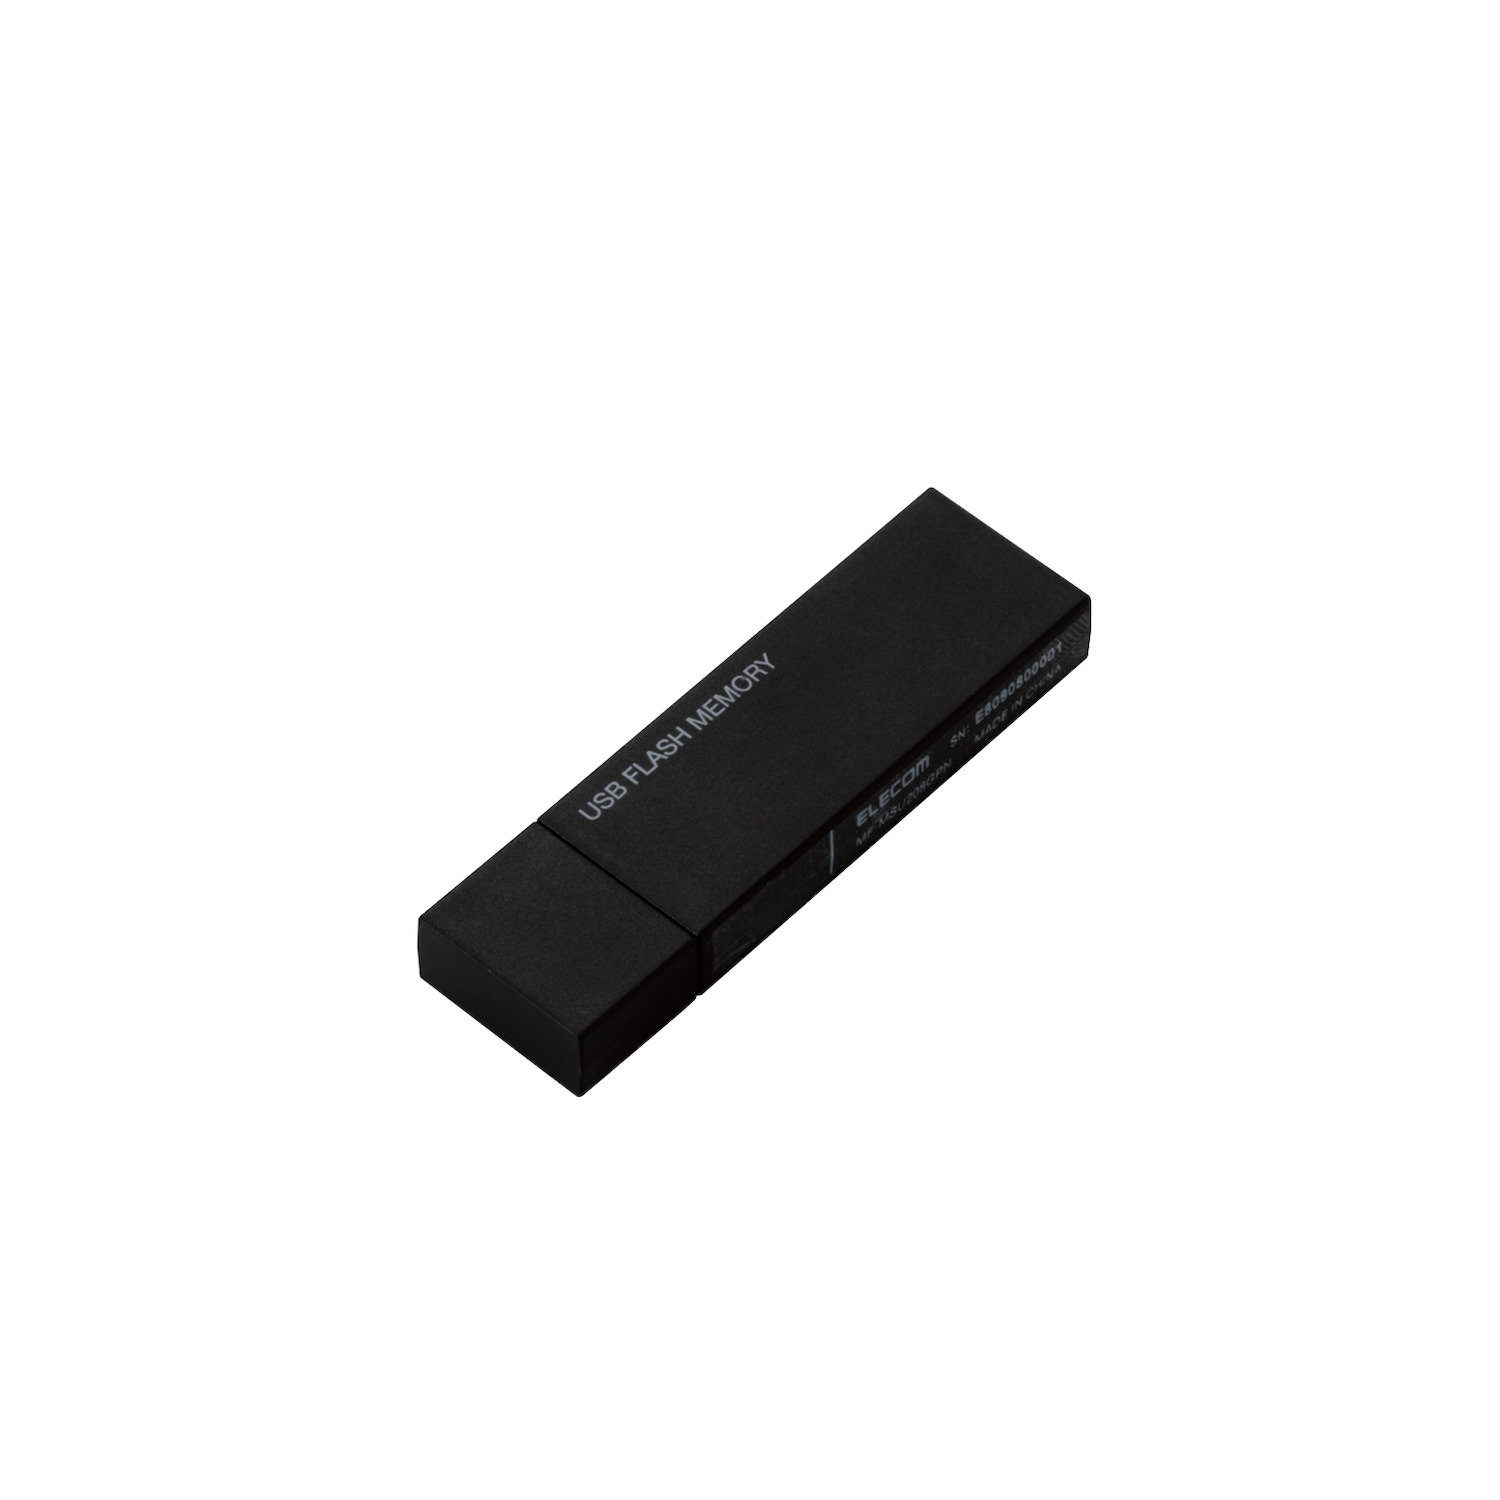 360円 直営店に限定 セキュリティ機能対応USBメモリ MF-MSU2B32GBK 32GB ブラック ELECOM